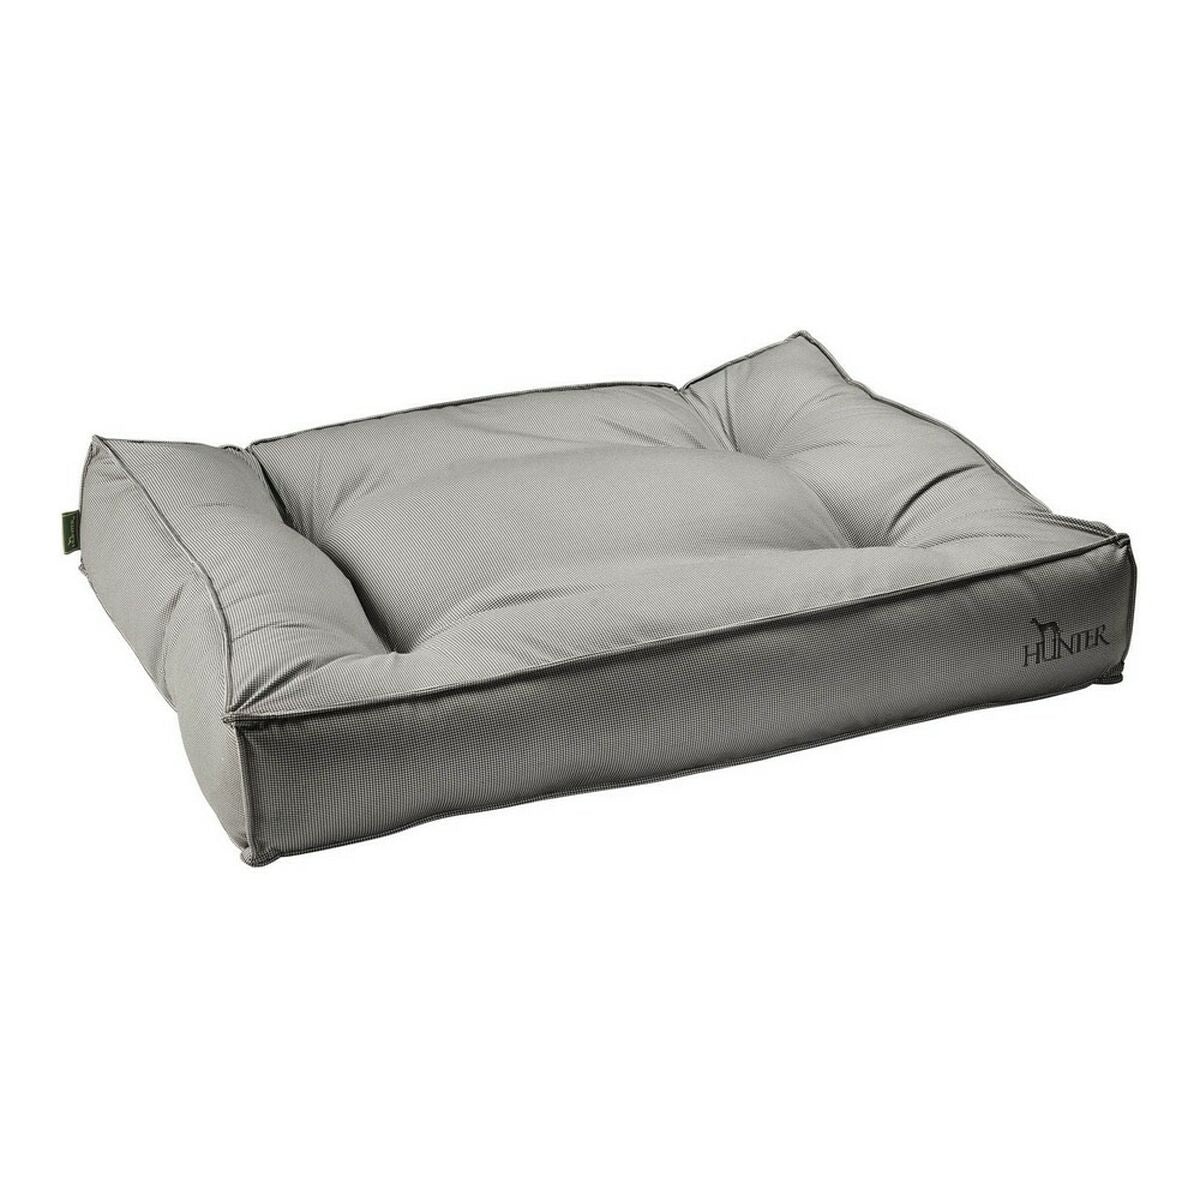 Кровать для собаки Hunter Lancaster Серый 120x90 cm